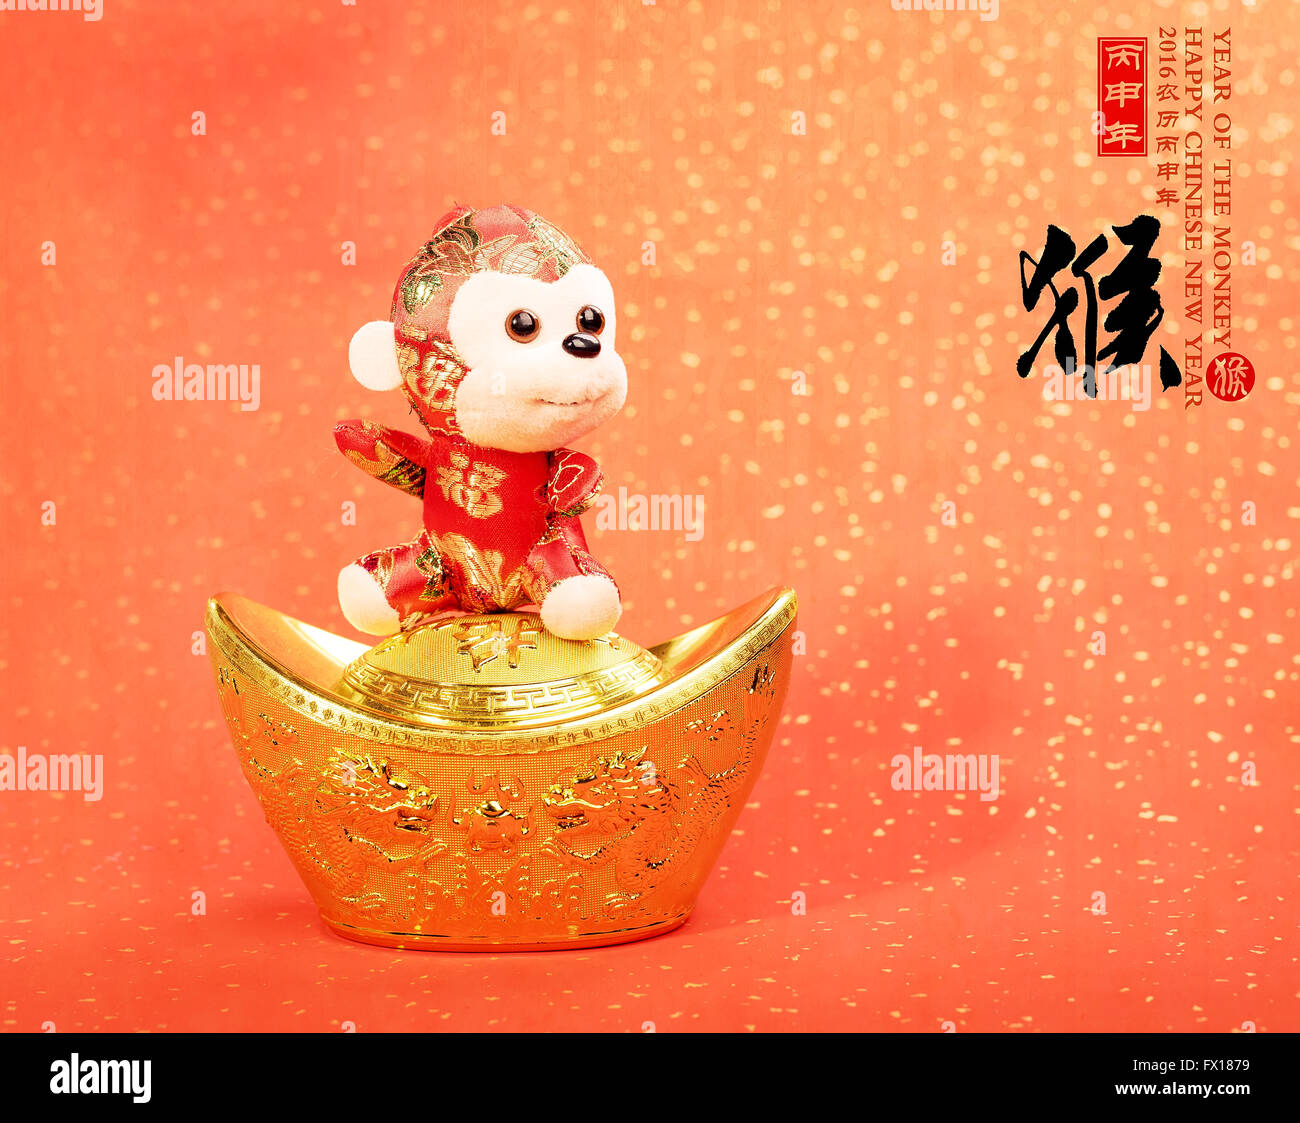 Nouvel an chinois jouet ornements de singe sur fond de fête Banque D'Images